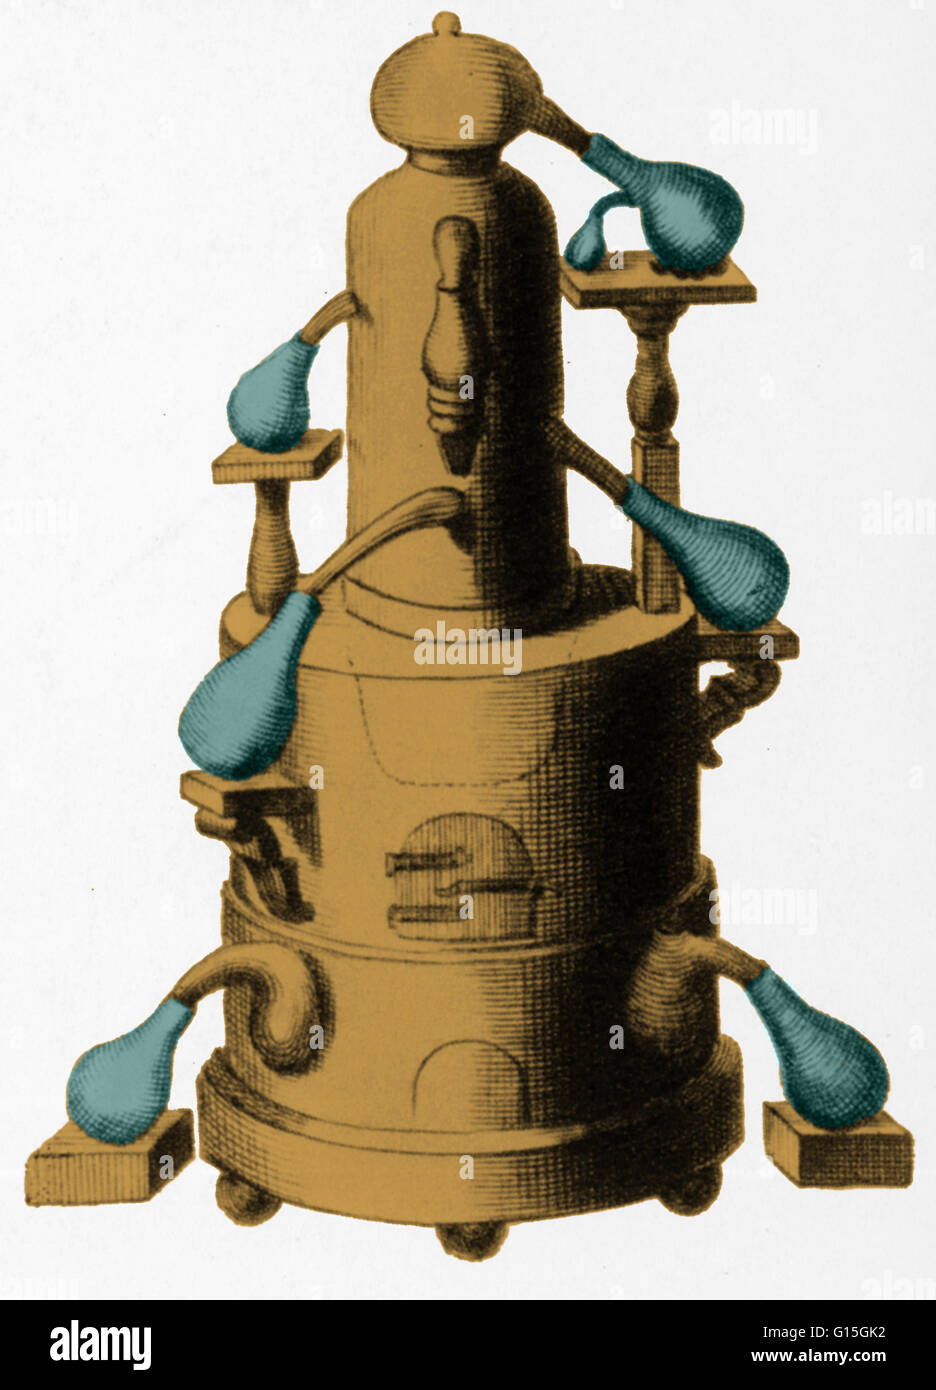 Verschiedene Arten des Apparates von 18. Jahrhundert Chemiker verwendet. Die hier gezeigte ist ein Alembic oder Destillieren Frontblenden, die noch einen ehrenvollen Platz in Chemie, und wurde verwendet, um Stoffe in ihre Bestandteile zu trennen. Stockfoto